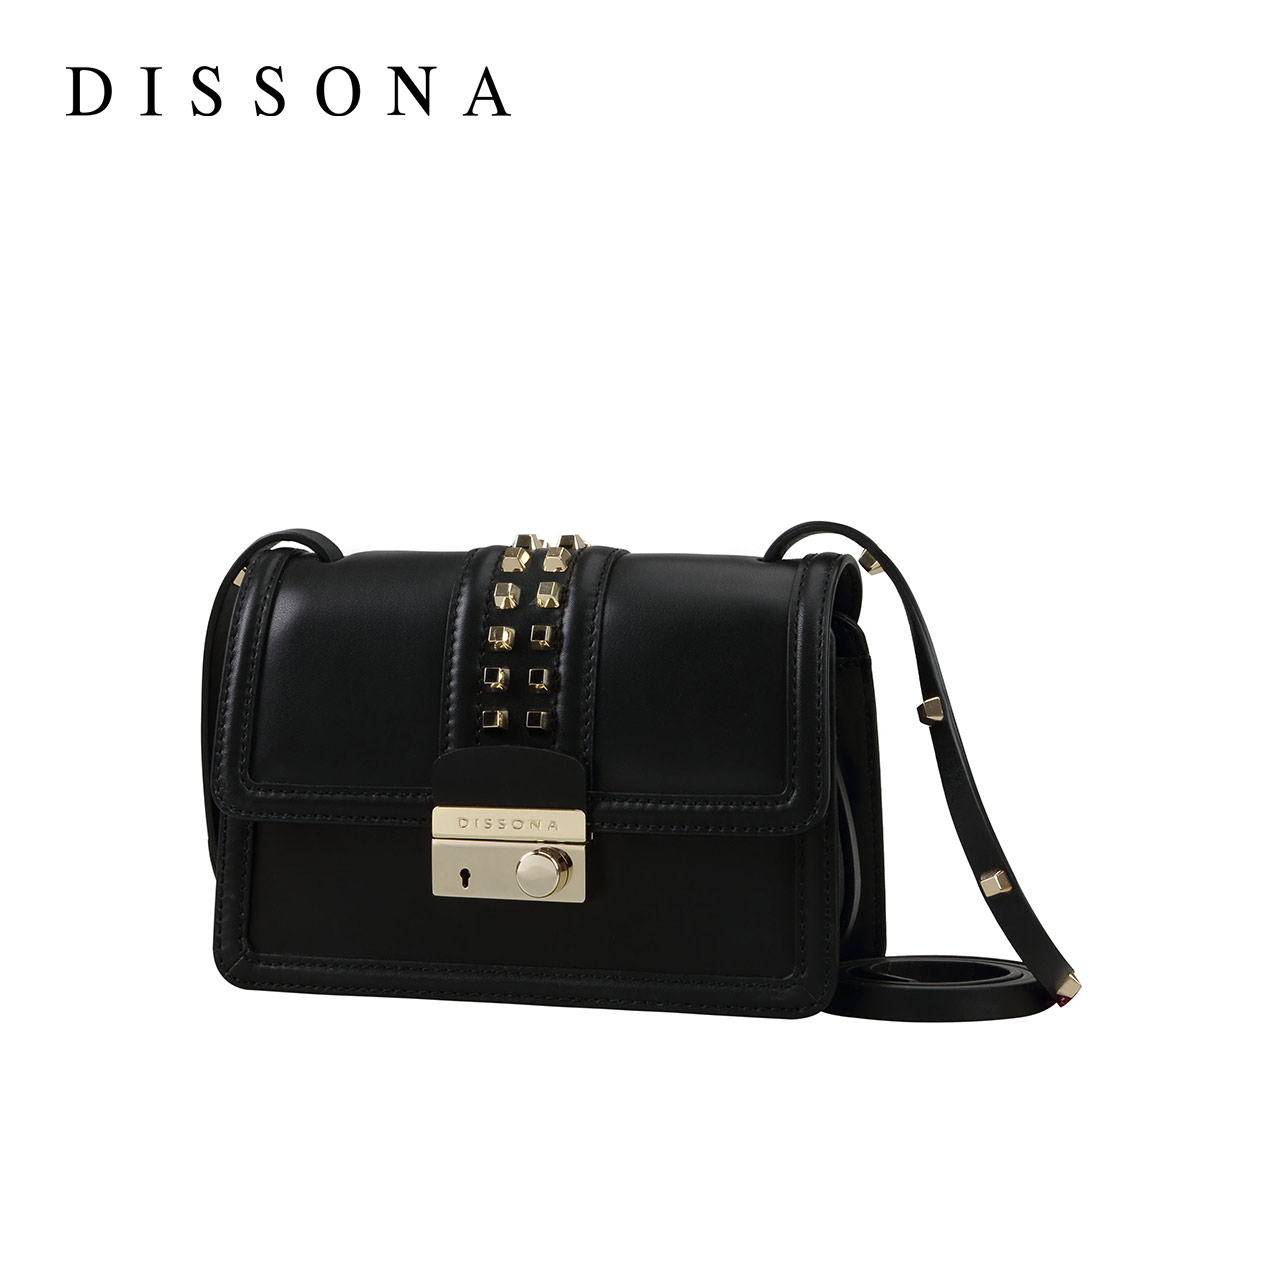 Dissona Bag Bag-056 – FitCheck